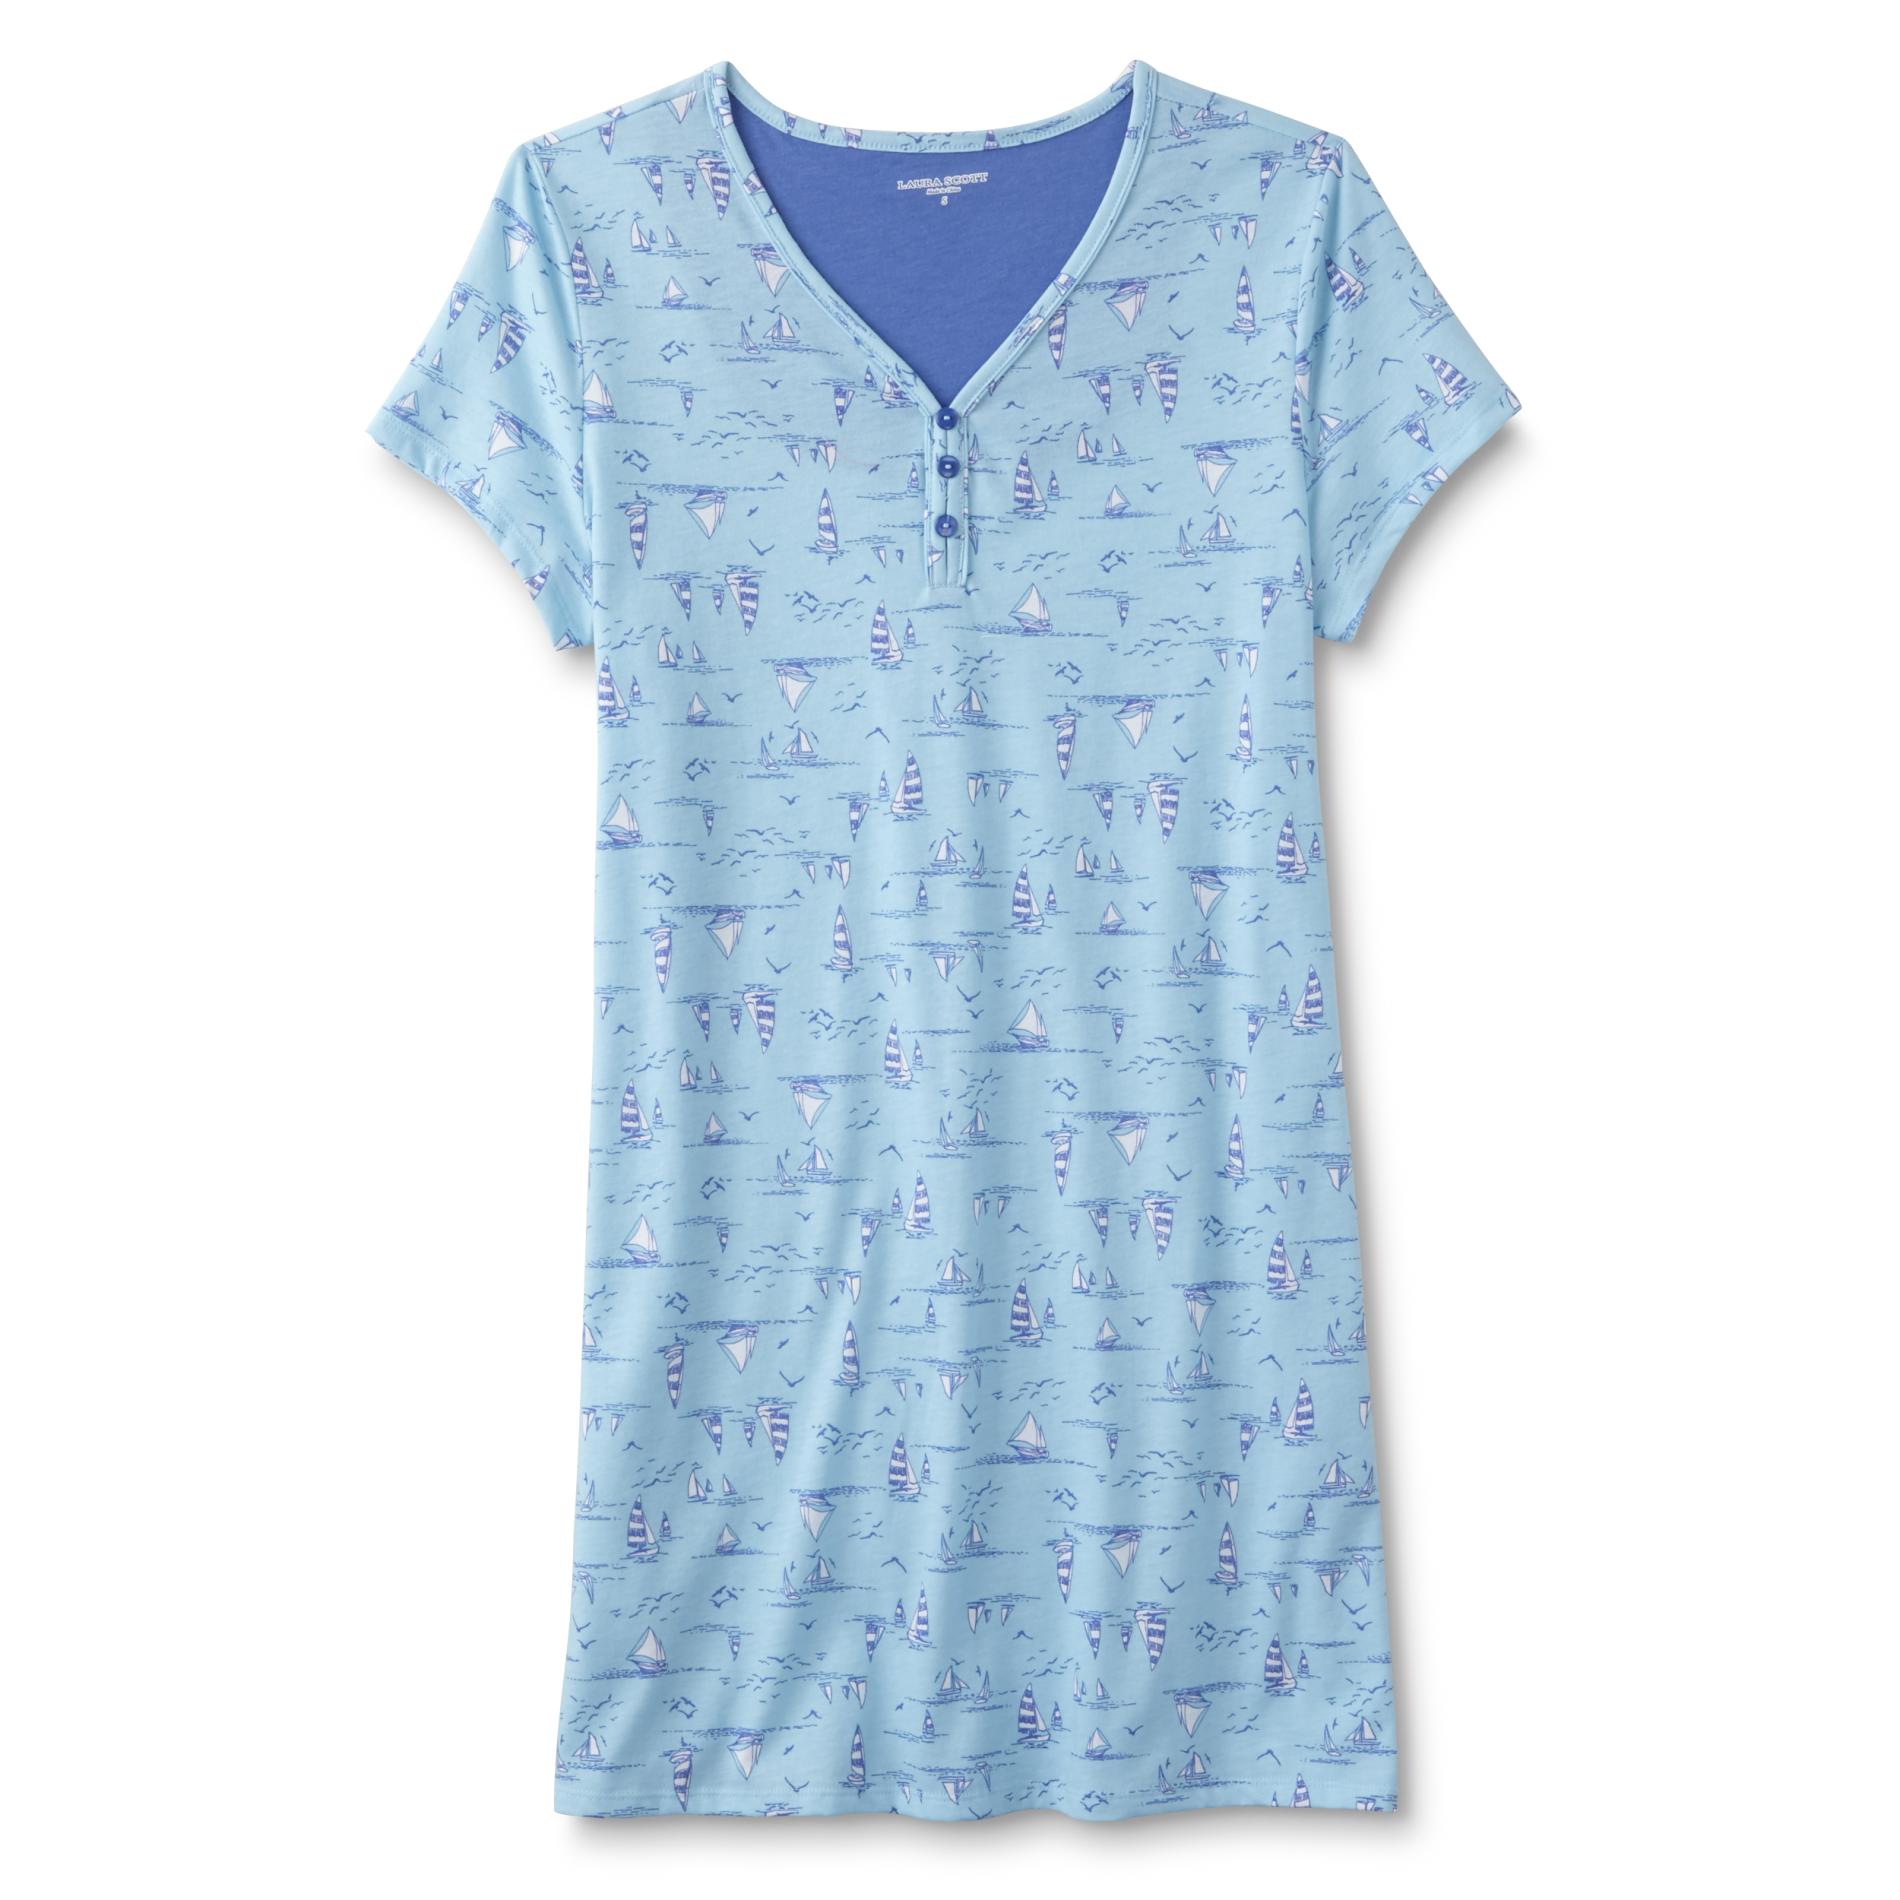 Laura Scott Women's Sleep Shirt - Sailboats